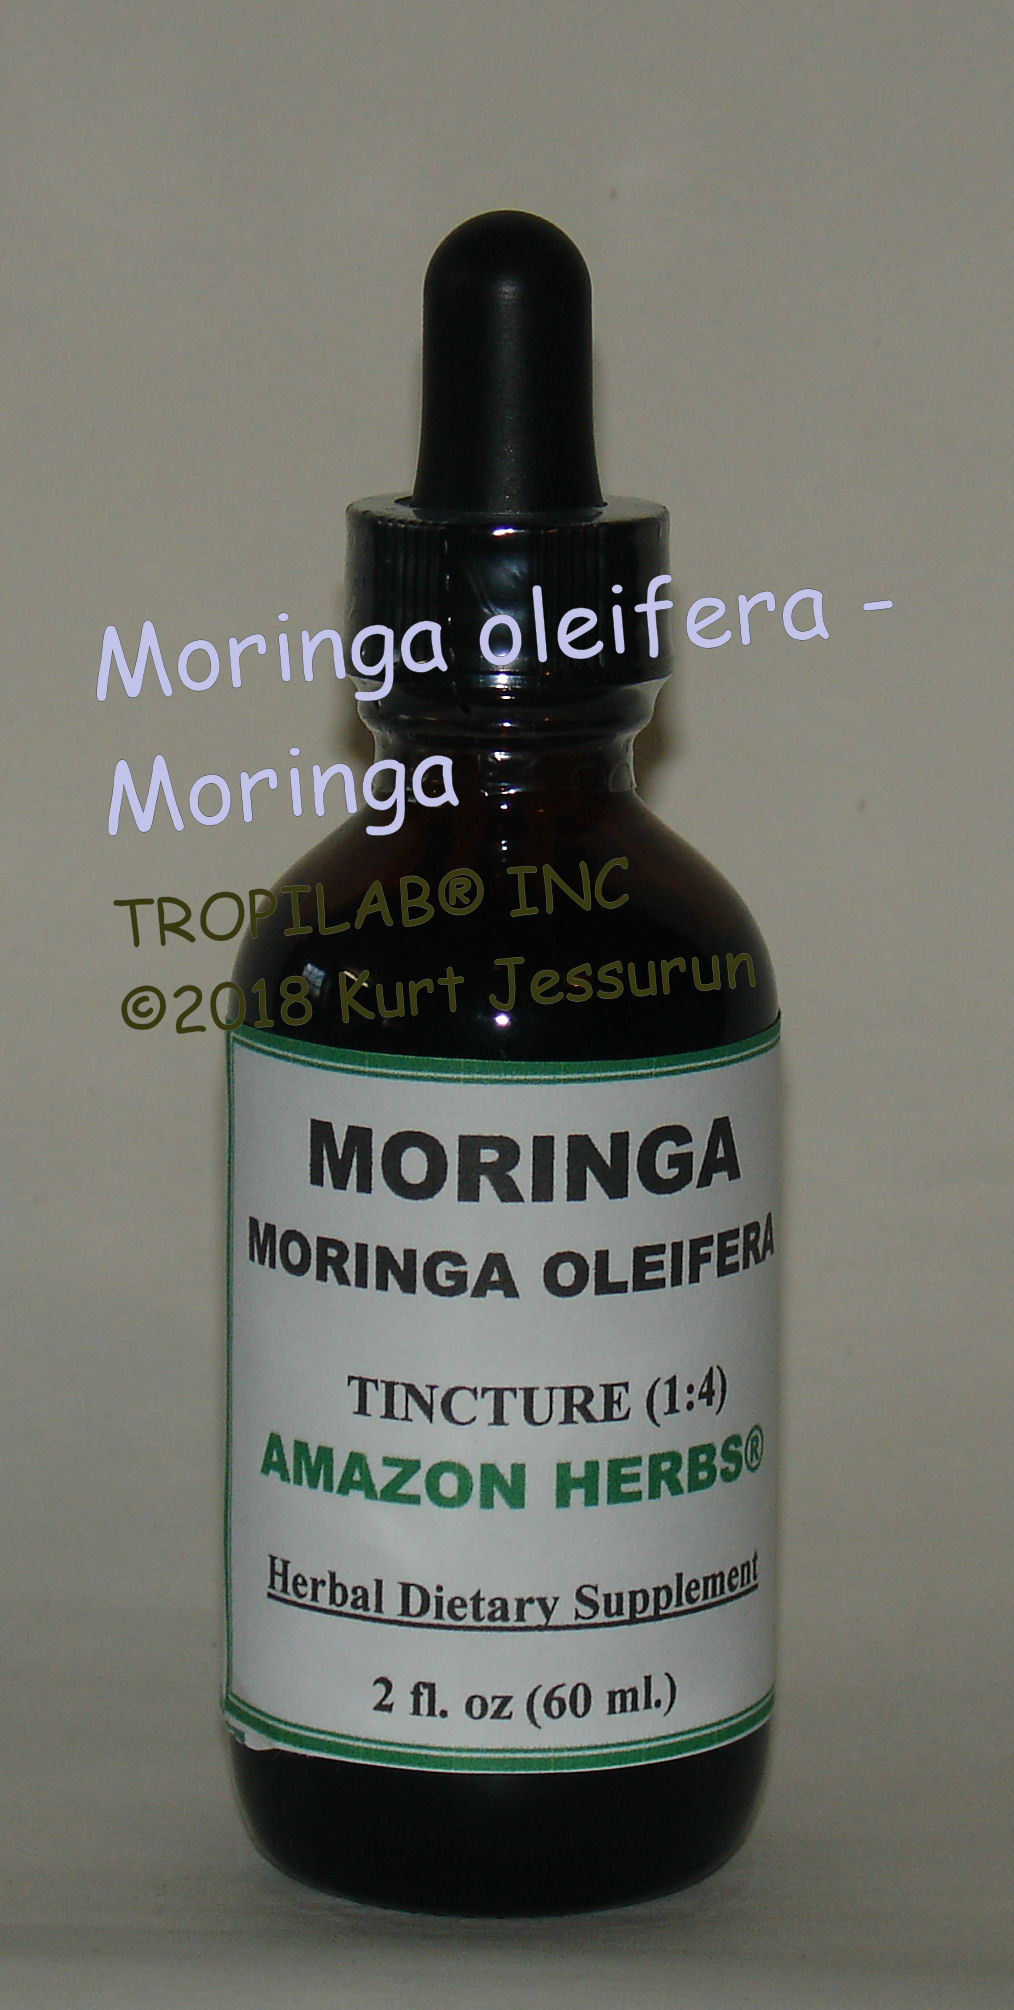 Moringa oleifera - Moringa tincture